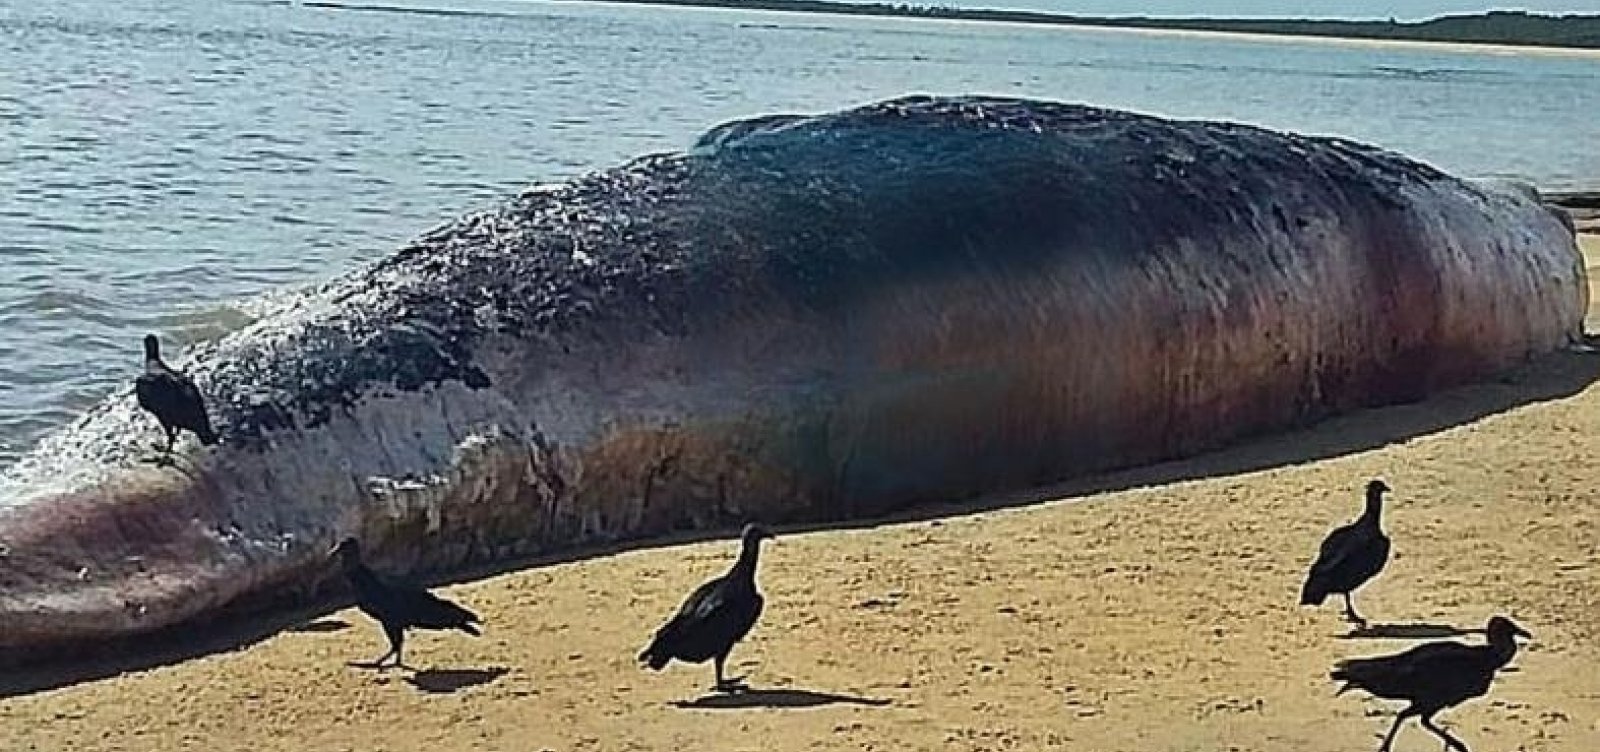 Baleia suja de óleo é encontrada morta em praia de Porto Seguro